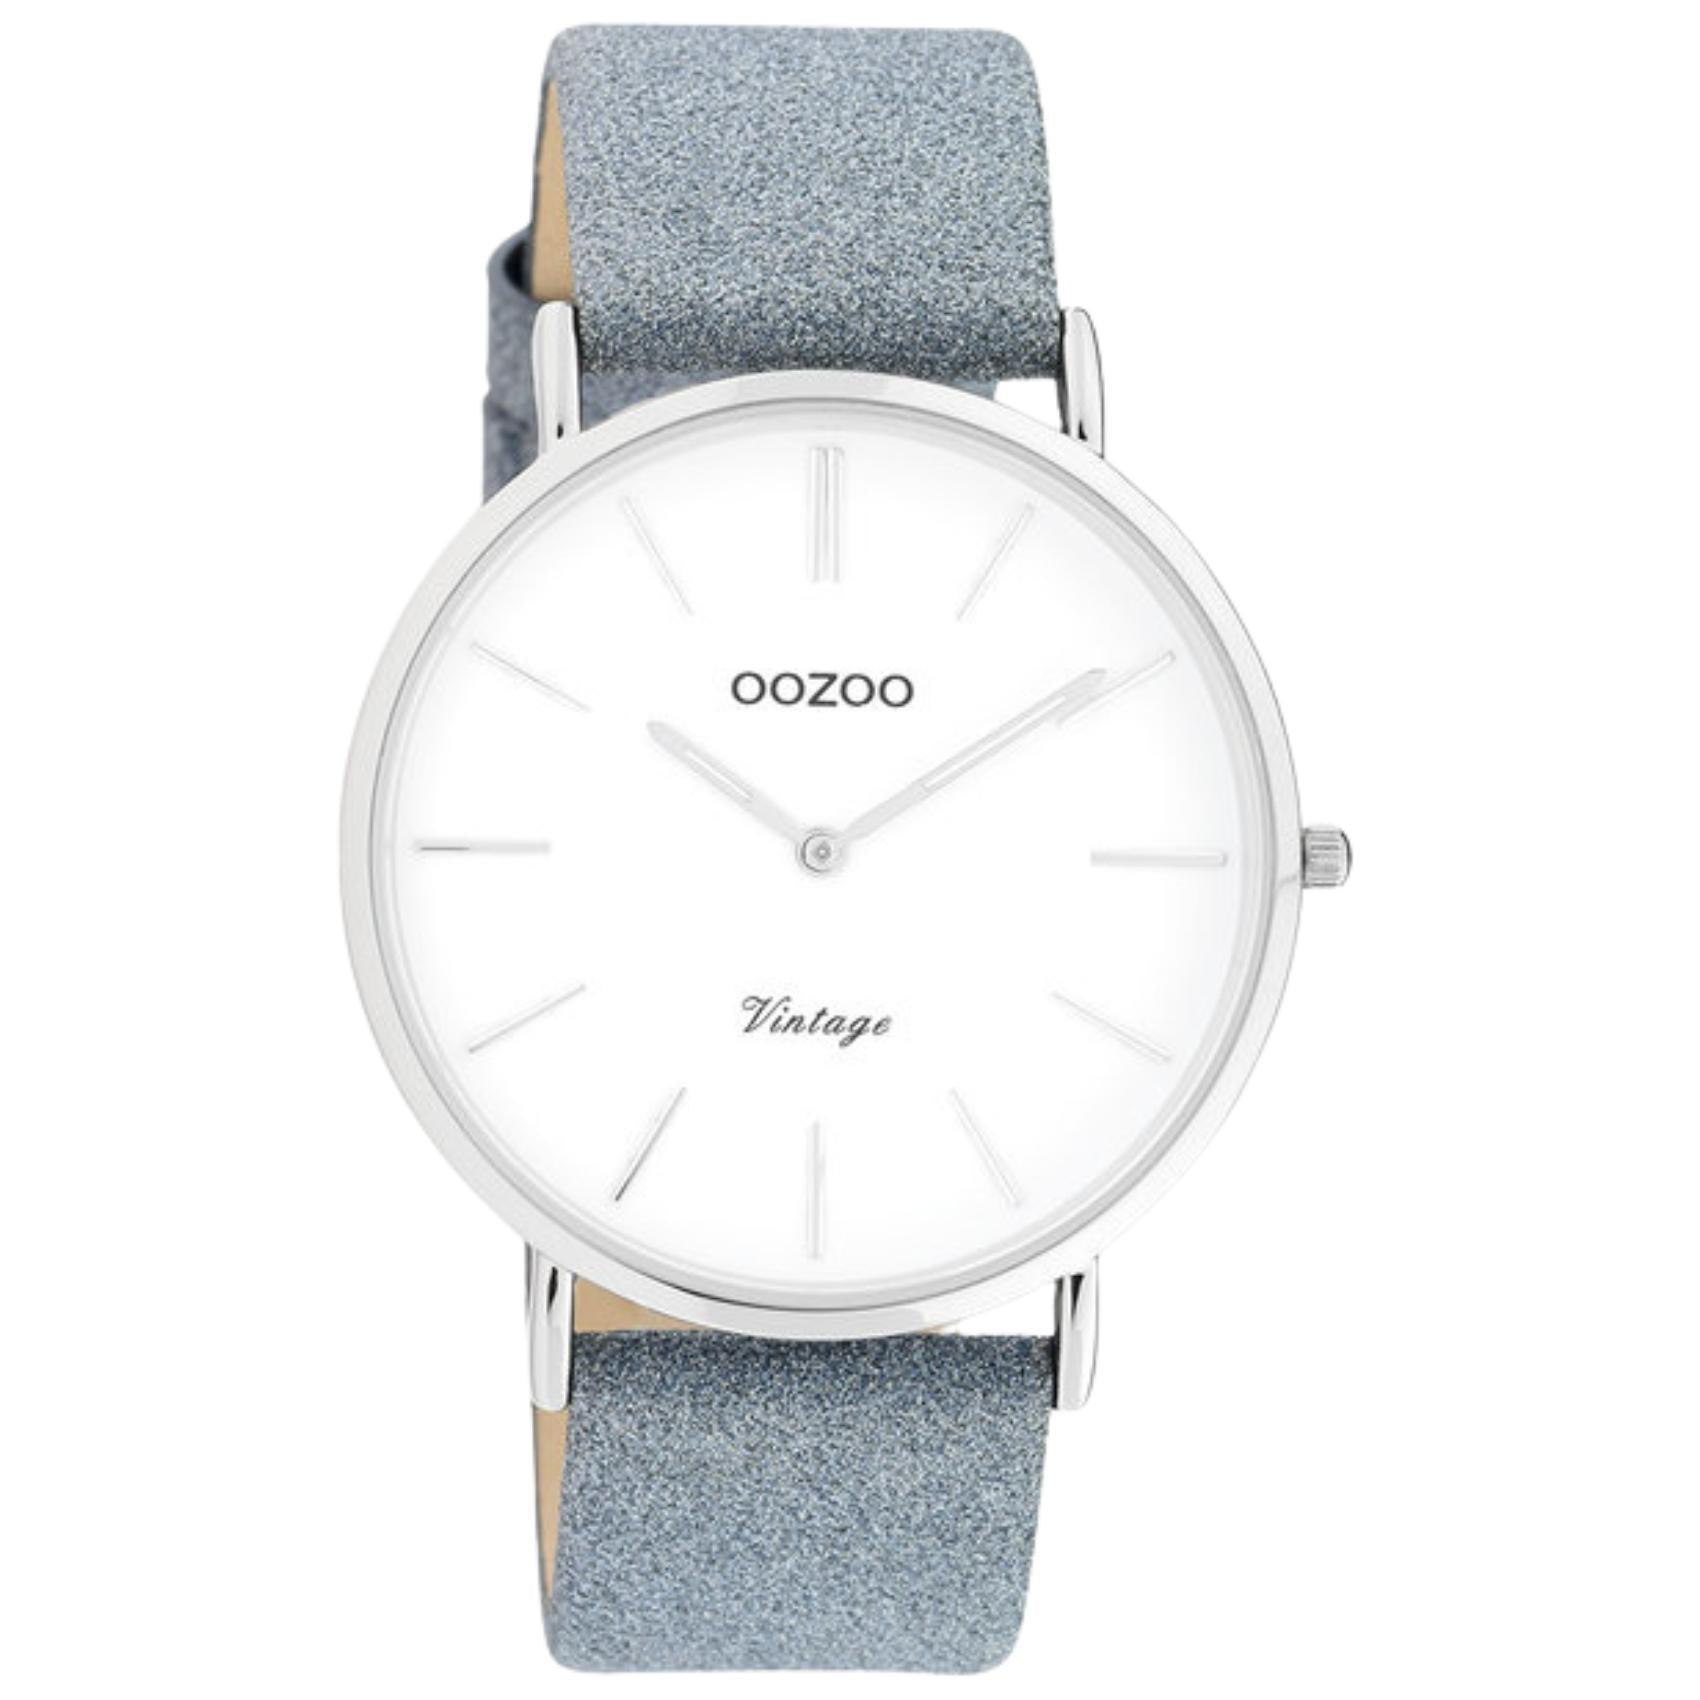 Στρογγυλό ρολόι Oozoo Vintage C20147 με μπλε δερμάτινο λουράκι,άσπρο καντράν διαμέτρου 43mm και μηχανισμό μπαταρίας quartz.